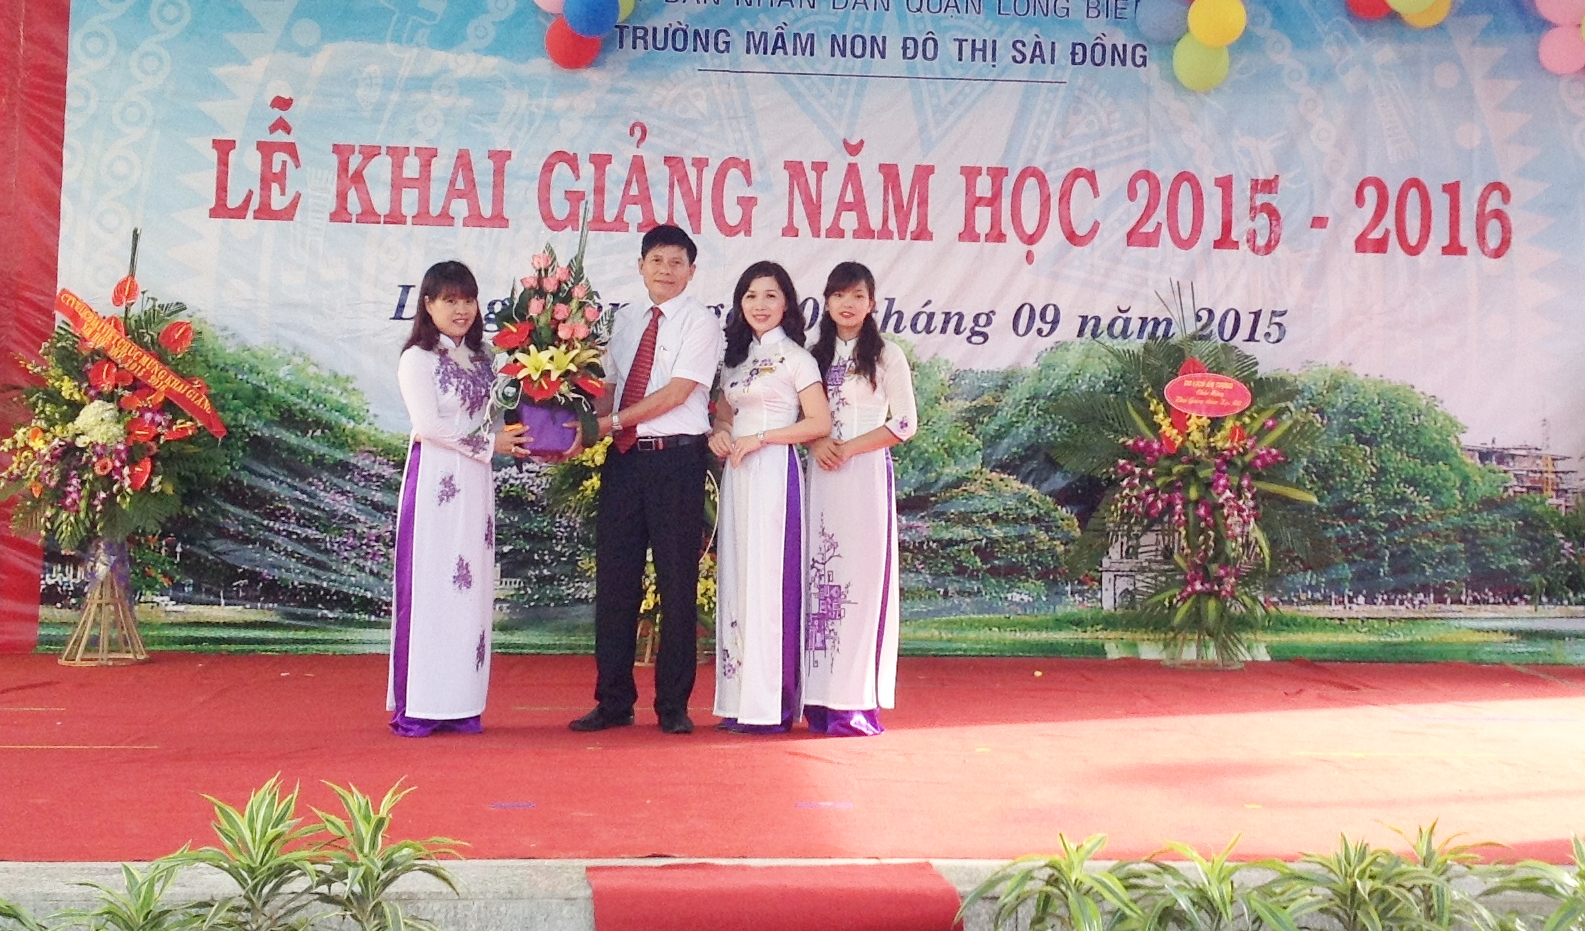 Ông Hoàng Văn Tiến – Đảng ủy viên – Phó CTHĐND tặng hoa cho nhà trường